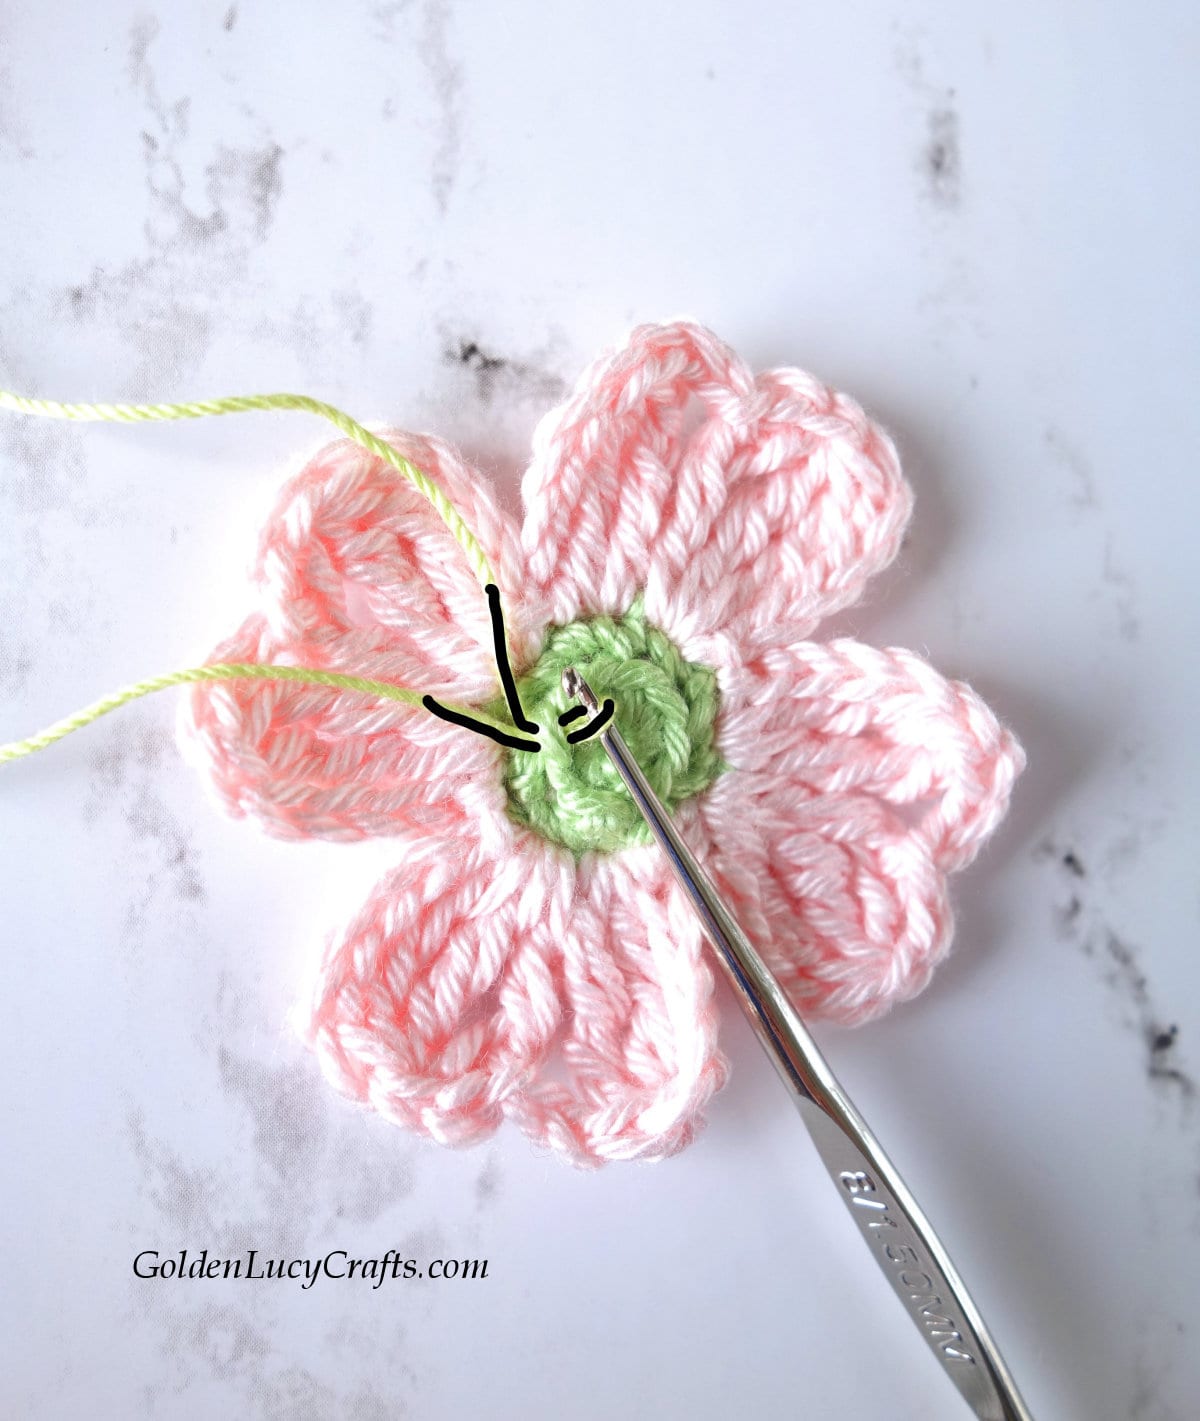 How to crochet center part of dogwood flower.